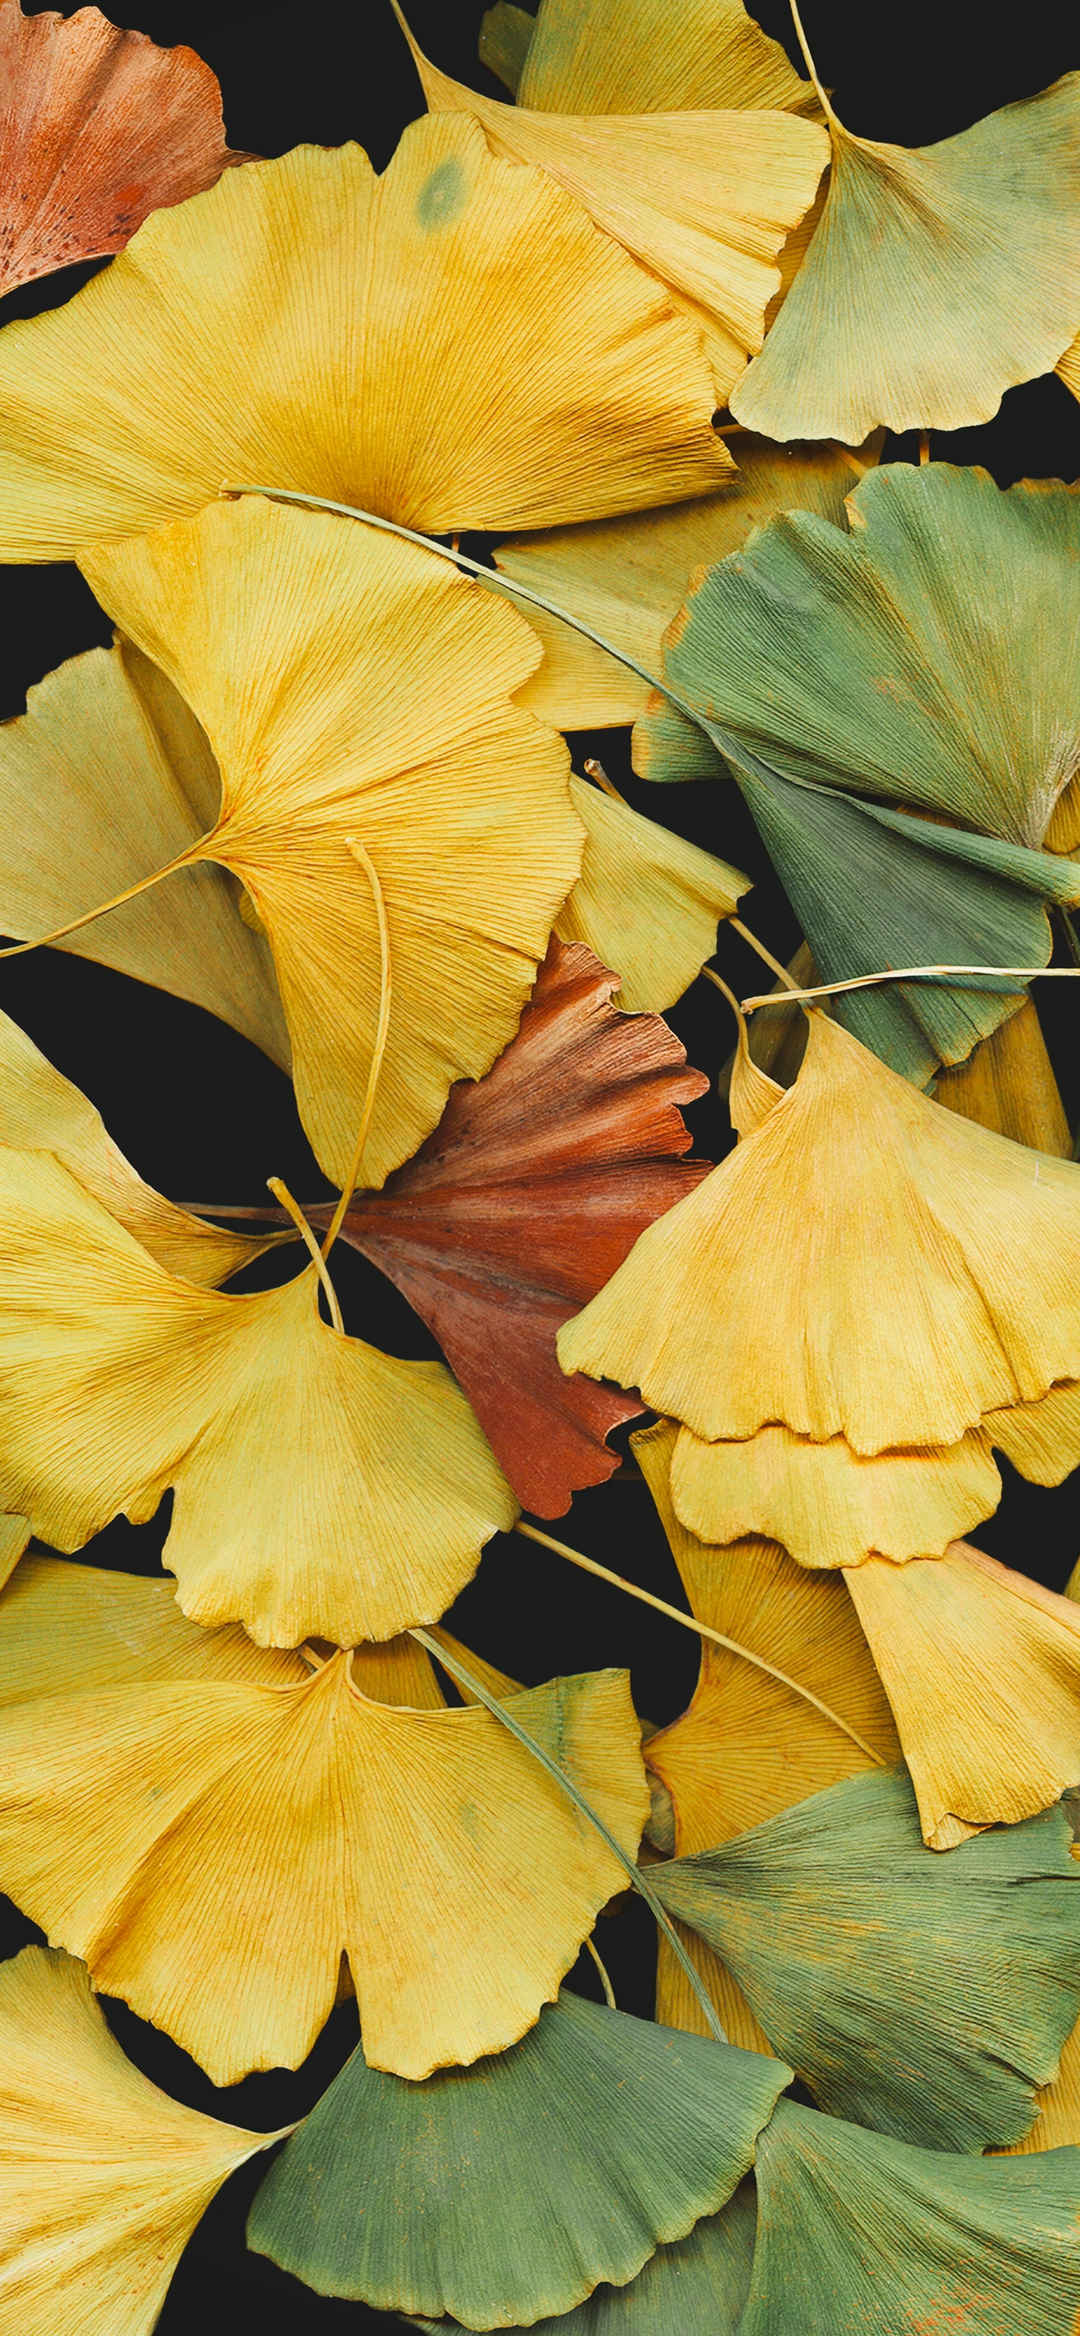 秋天浮萍干燥叶子美景壁纸